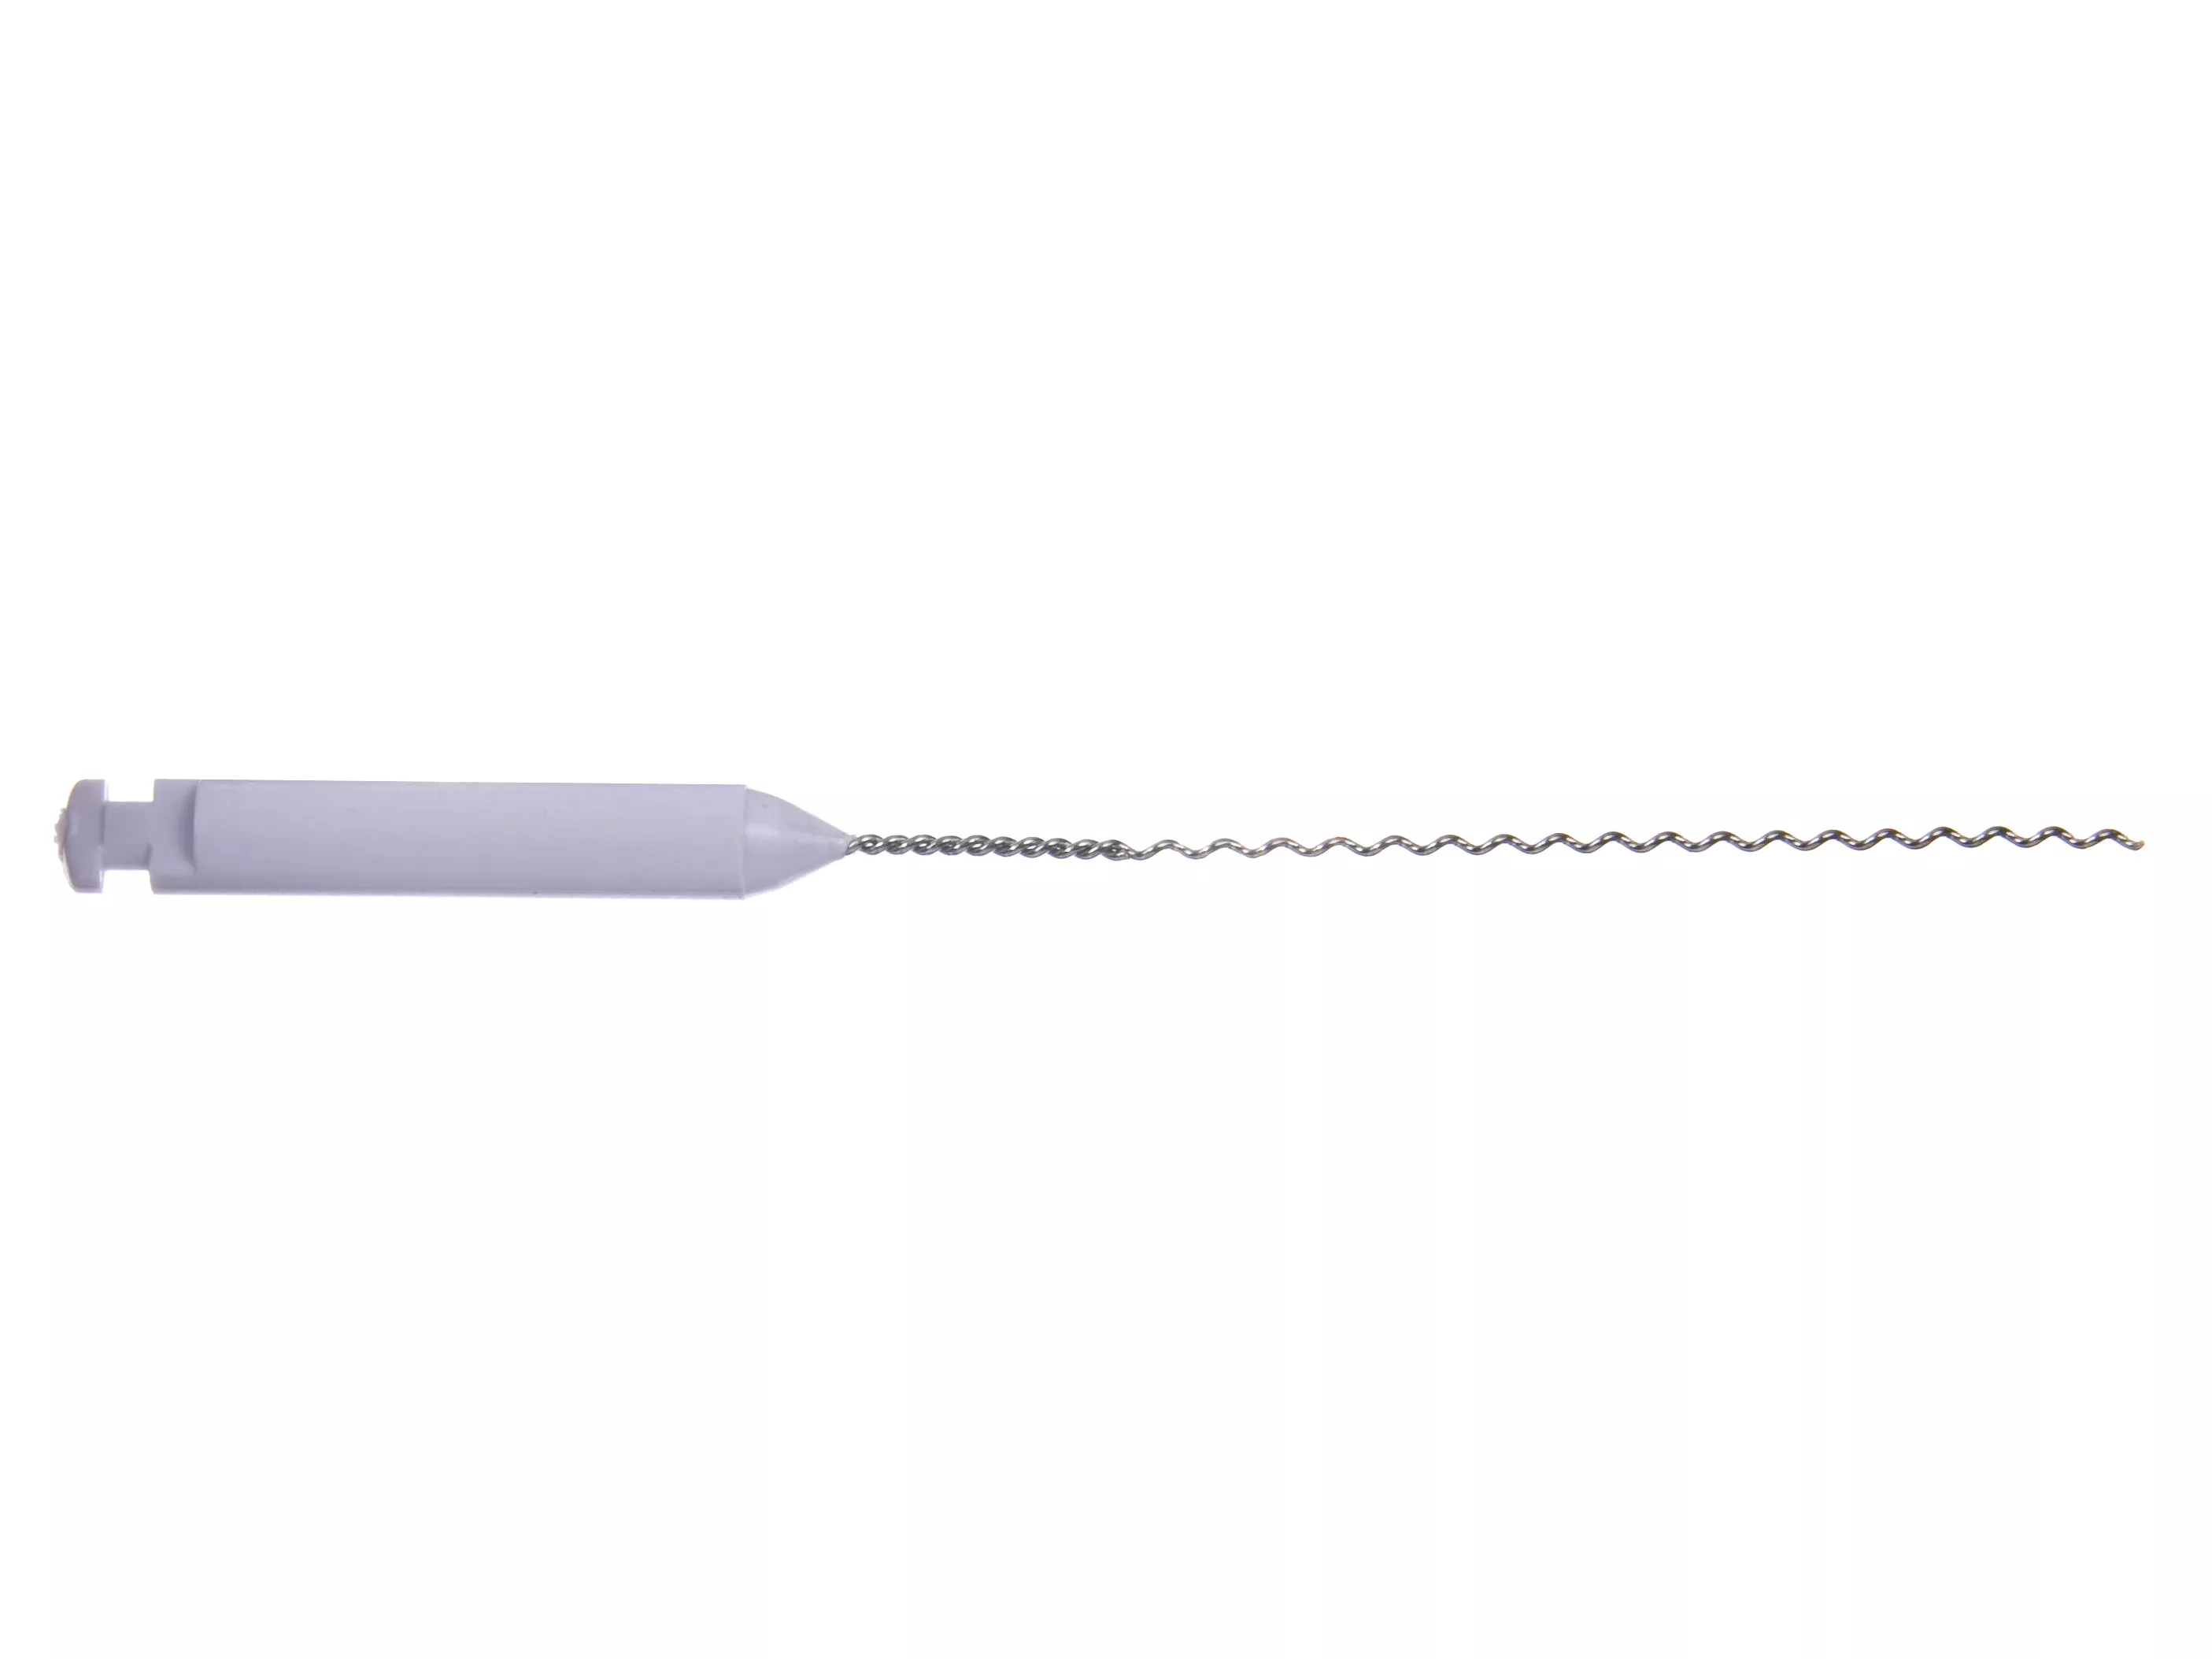 Spiralfillers n50 L:29 mm ISO col - инструменты эндодонтические (каналонаполнители спиральные 4 шт.), шт